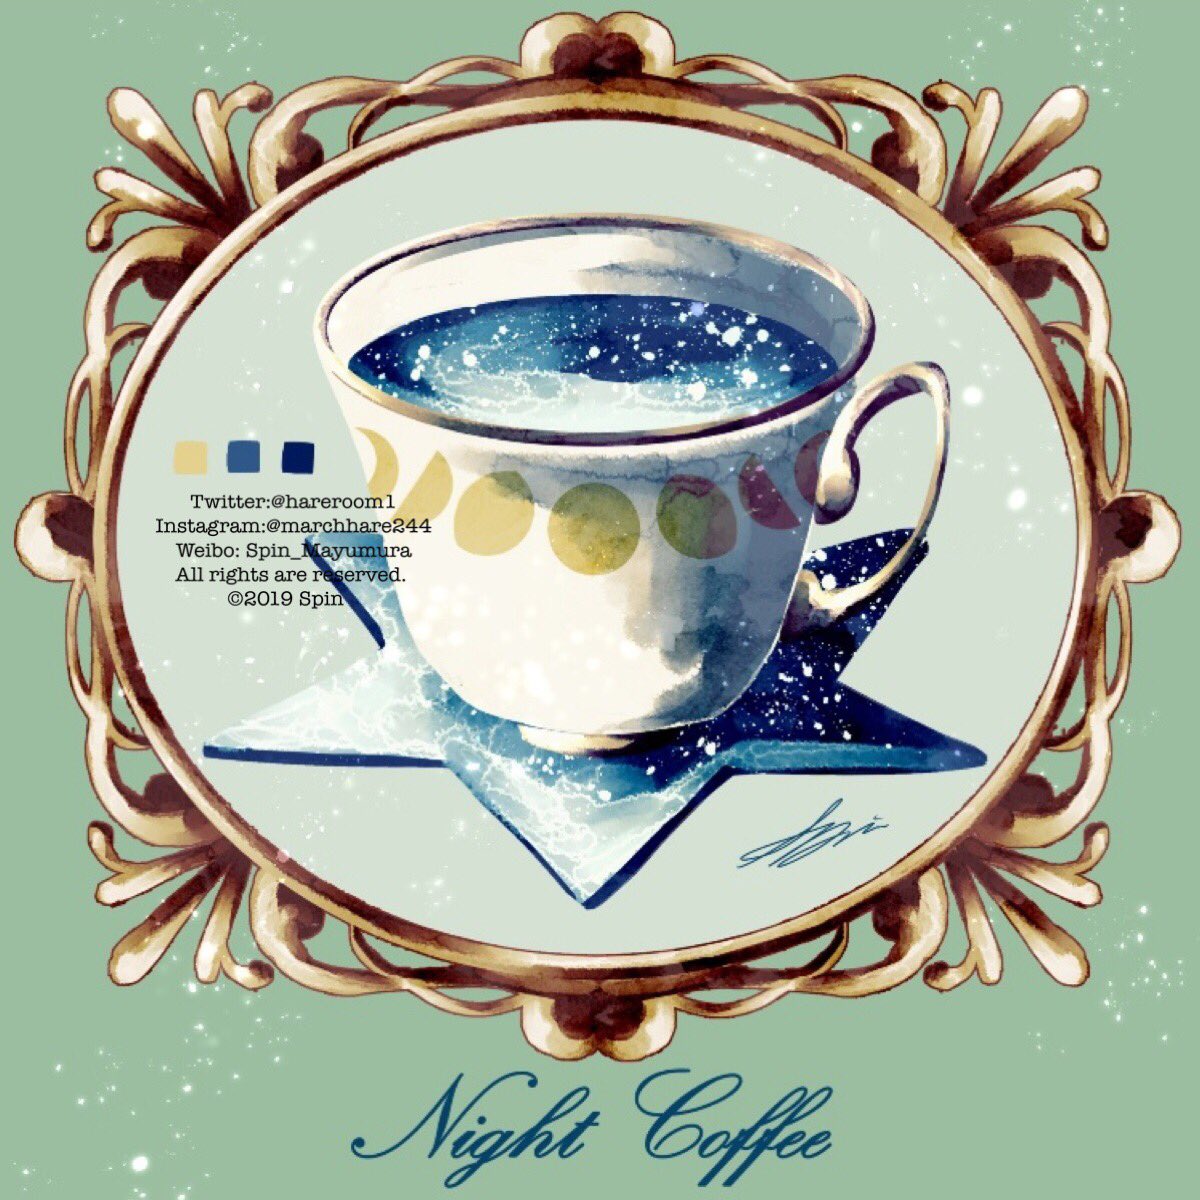 「架空喫茶「Night Sky」 」|Spin@3.25~26出版記念展/作品集2巻発売中のイラスト